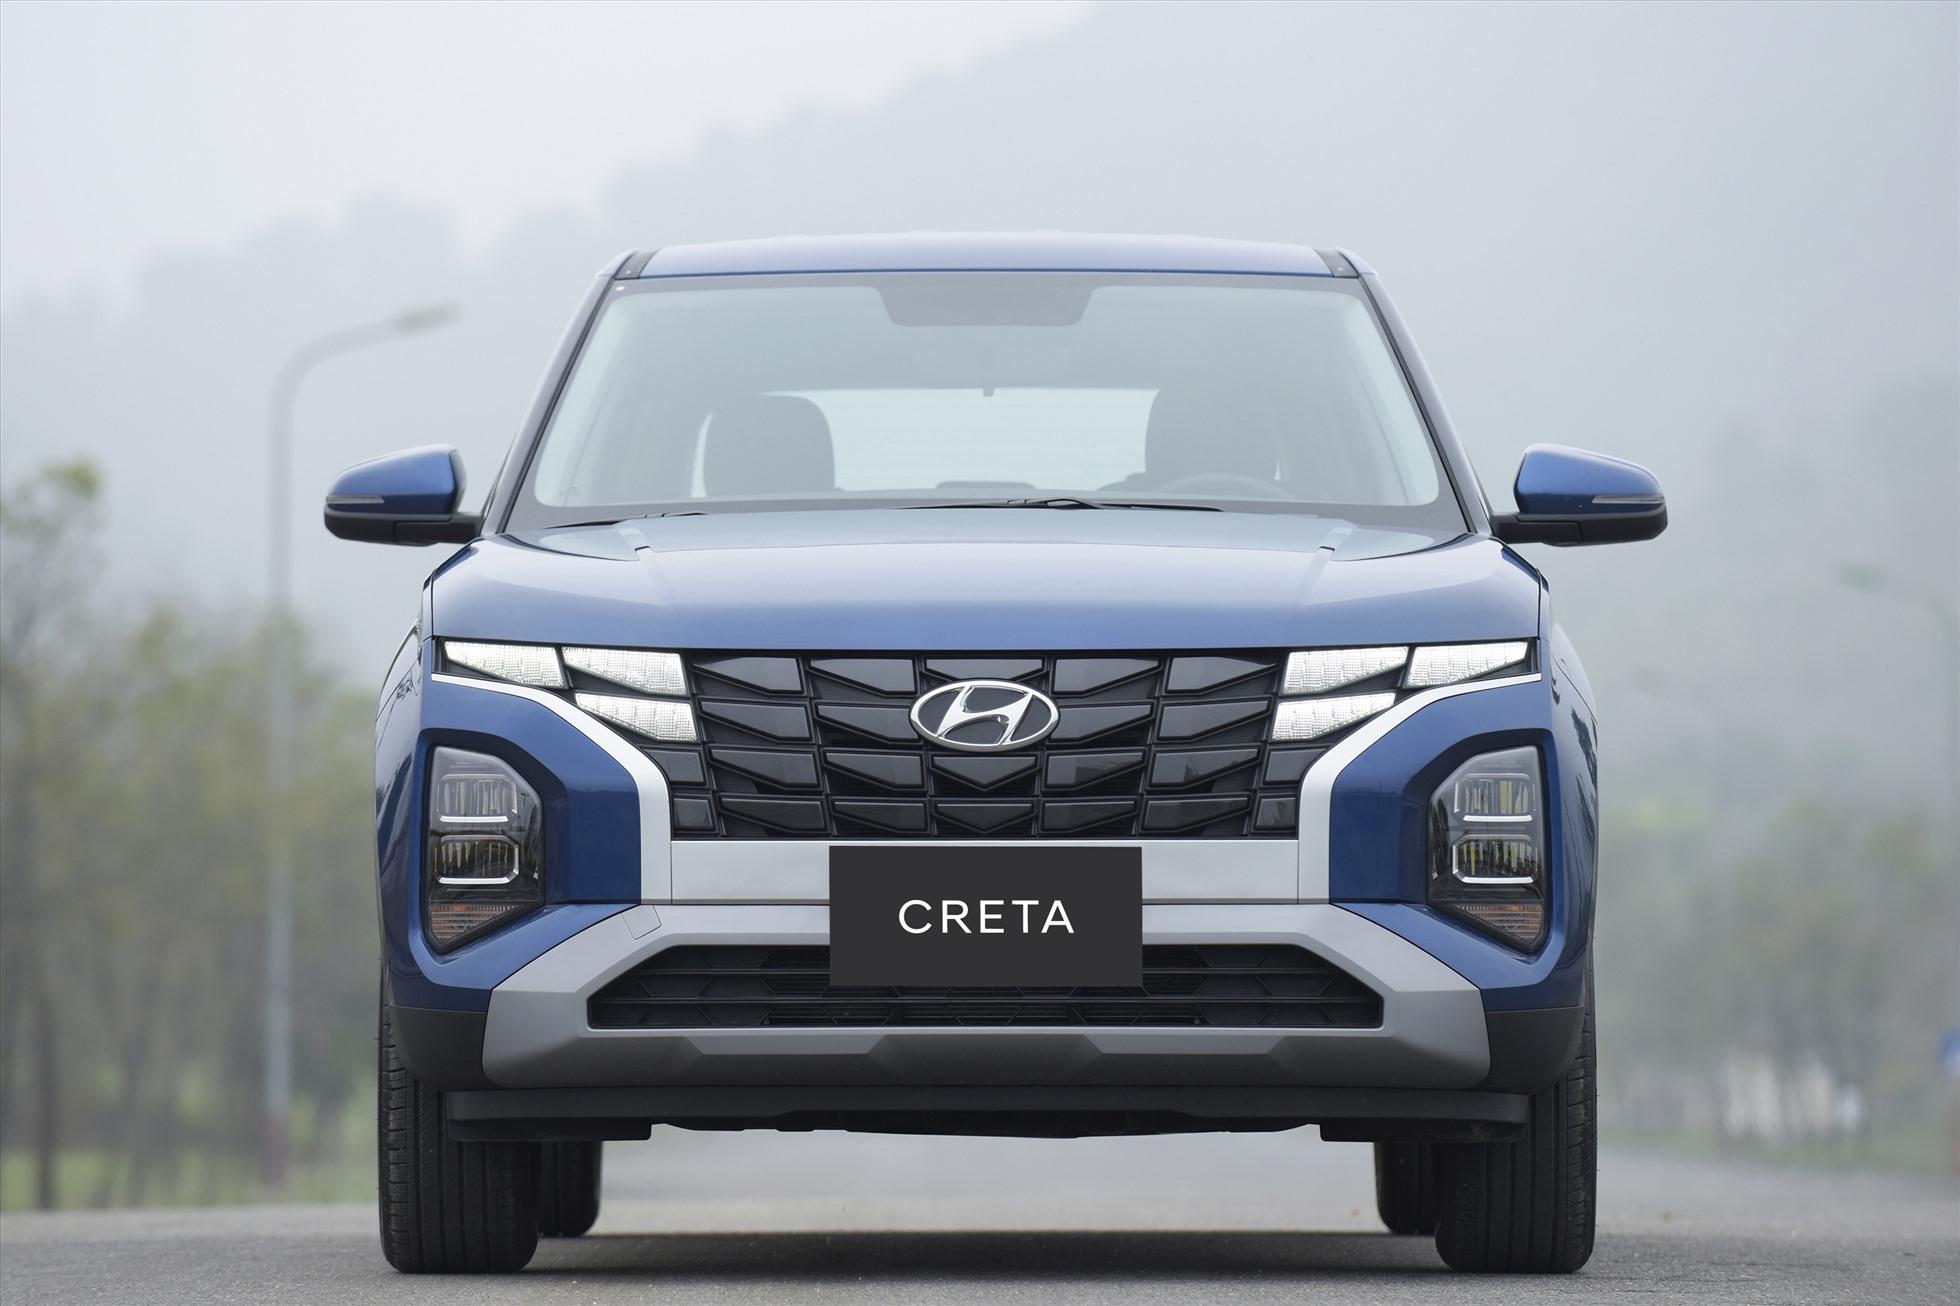 Mẫu xe thứ 3 của Hyundai góp mặt trong danh sách này. Với 585 xe bán ra, Hyundai Creta góp mặt ở vị trí thứ 8 trong 10 mẫu ô tô bán chạy nhất Việt Nam tháng 1.2023. Các phiên bản Creta phân phối tại Việt Nam hiện vẫn đang được nhập khẩu từ Indonesia, giá bán từ 640 - 745 triệu đồng.